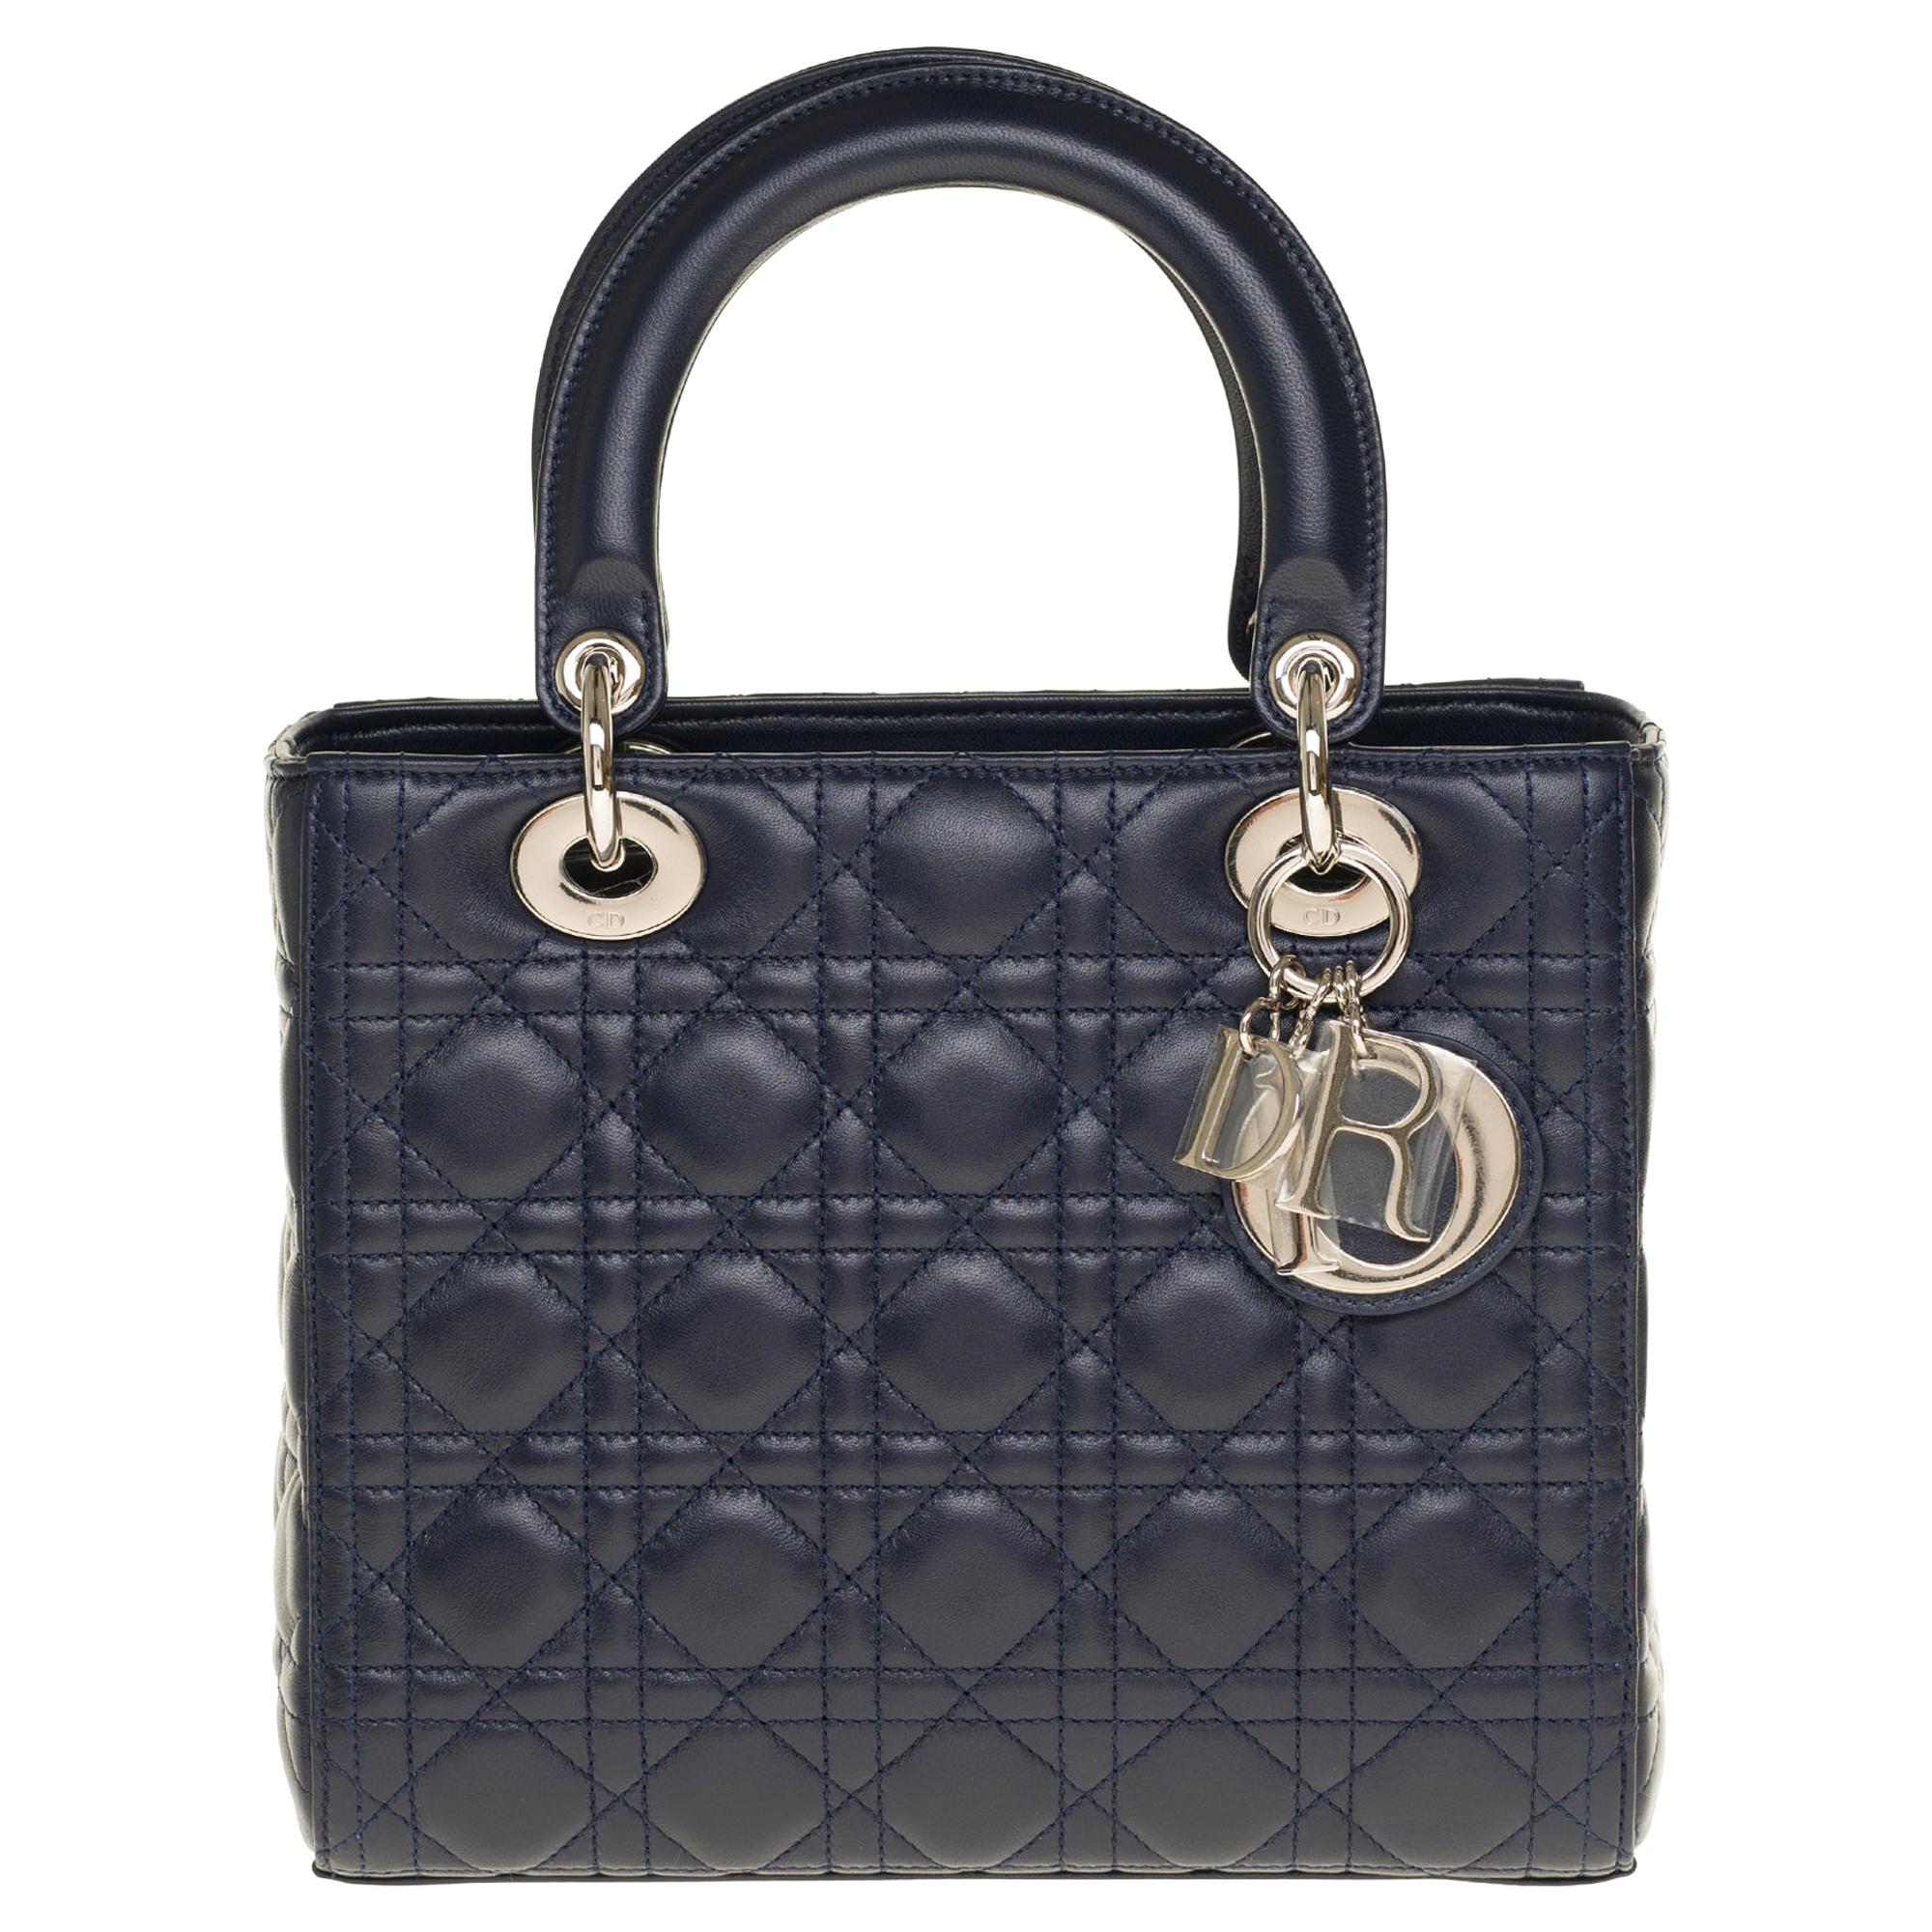  Christian Dior Lady Dior Medium size handbag in blue navy cannage leather, PHW